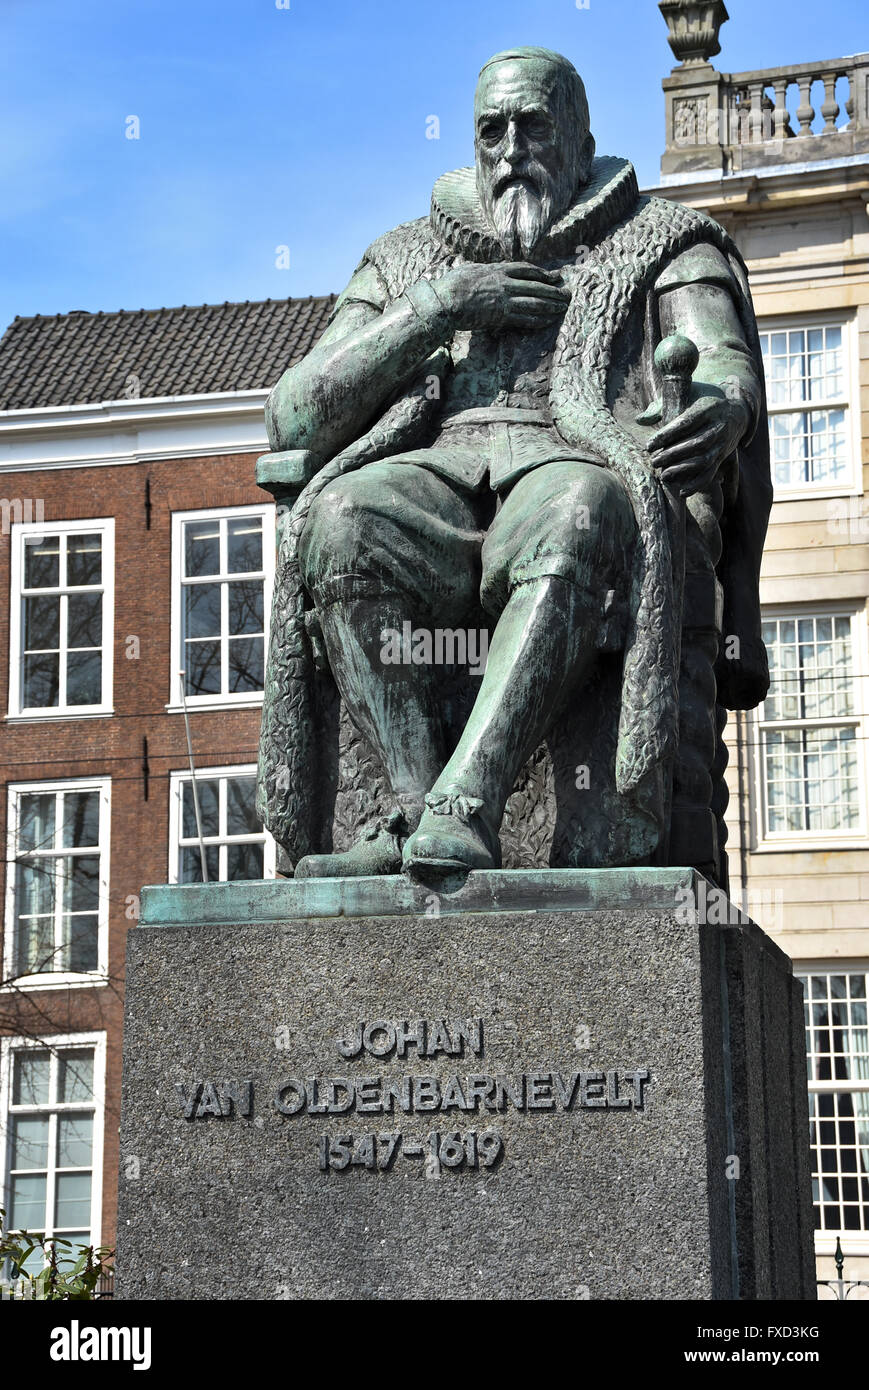 Johan van Oldenbarnevelt Statue gegenüber der niederländischen Parlament Niederlande den Haag (Johan van Oldenbarnevelt 1547 – 1619 war ein niederländischer Staatsmann, der eine wichtige in der niederländischen Kampf für Unabhängigkeit von Spanien Rolle) Stockfoto